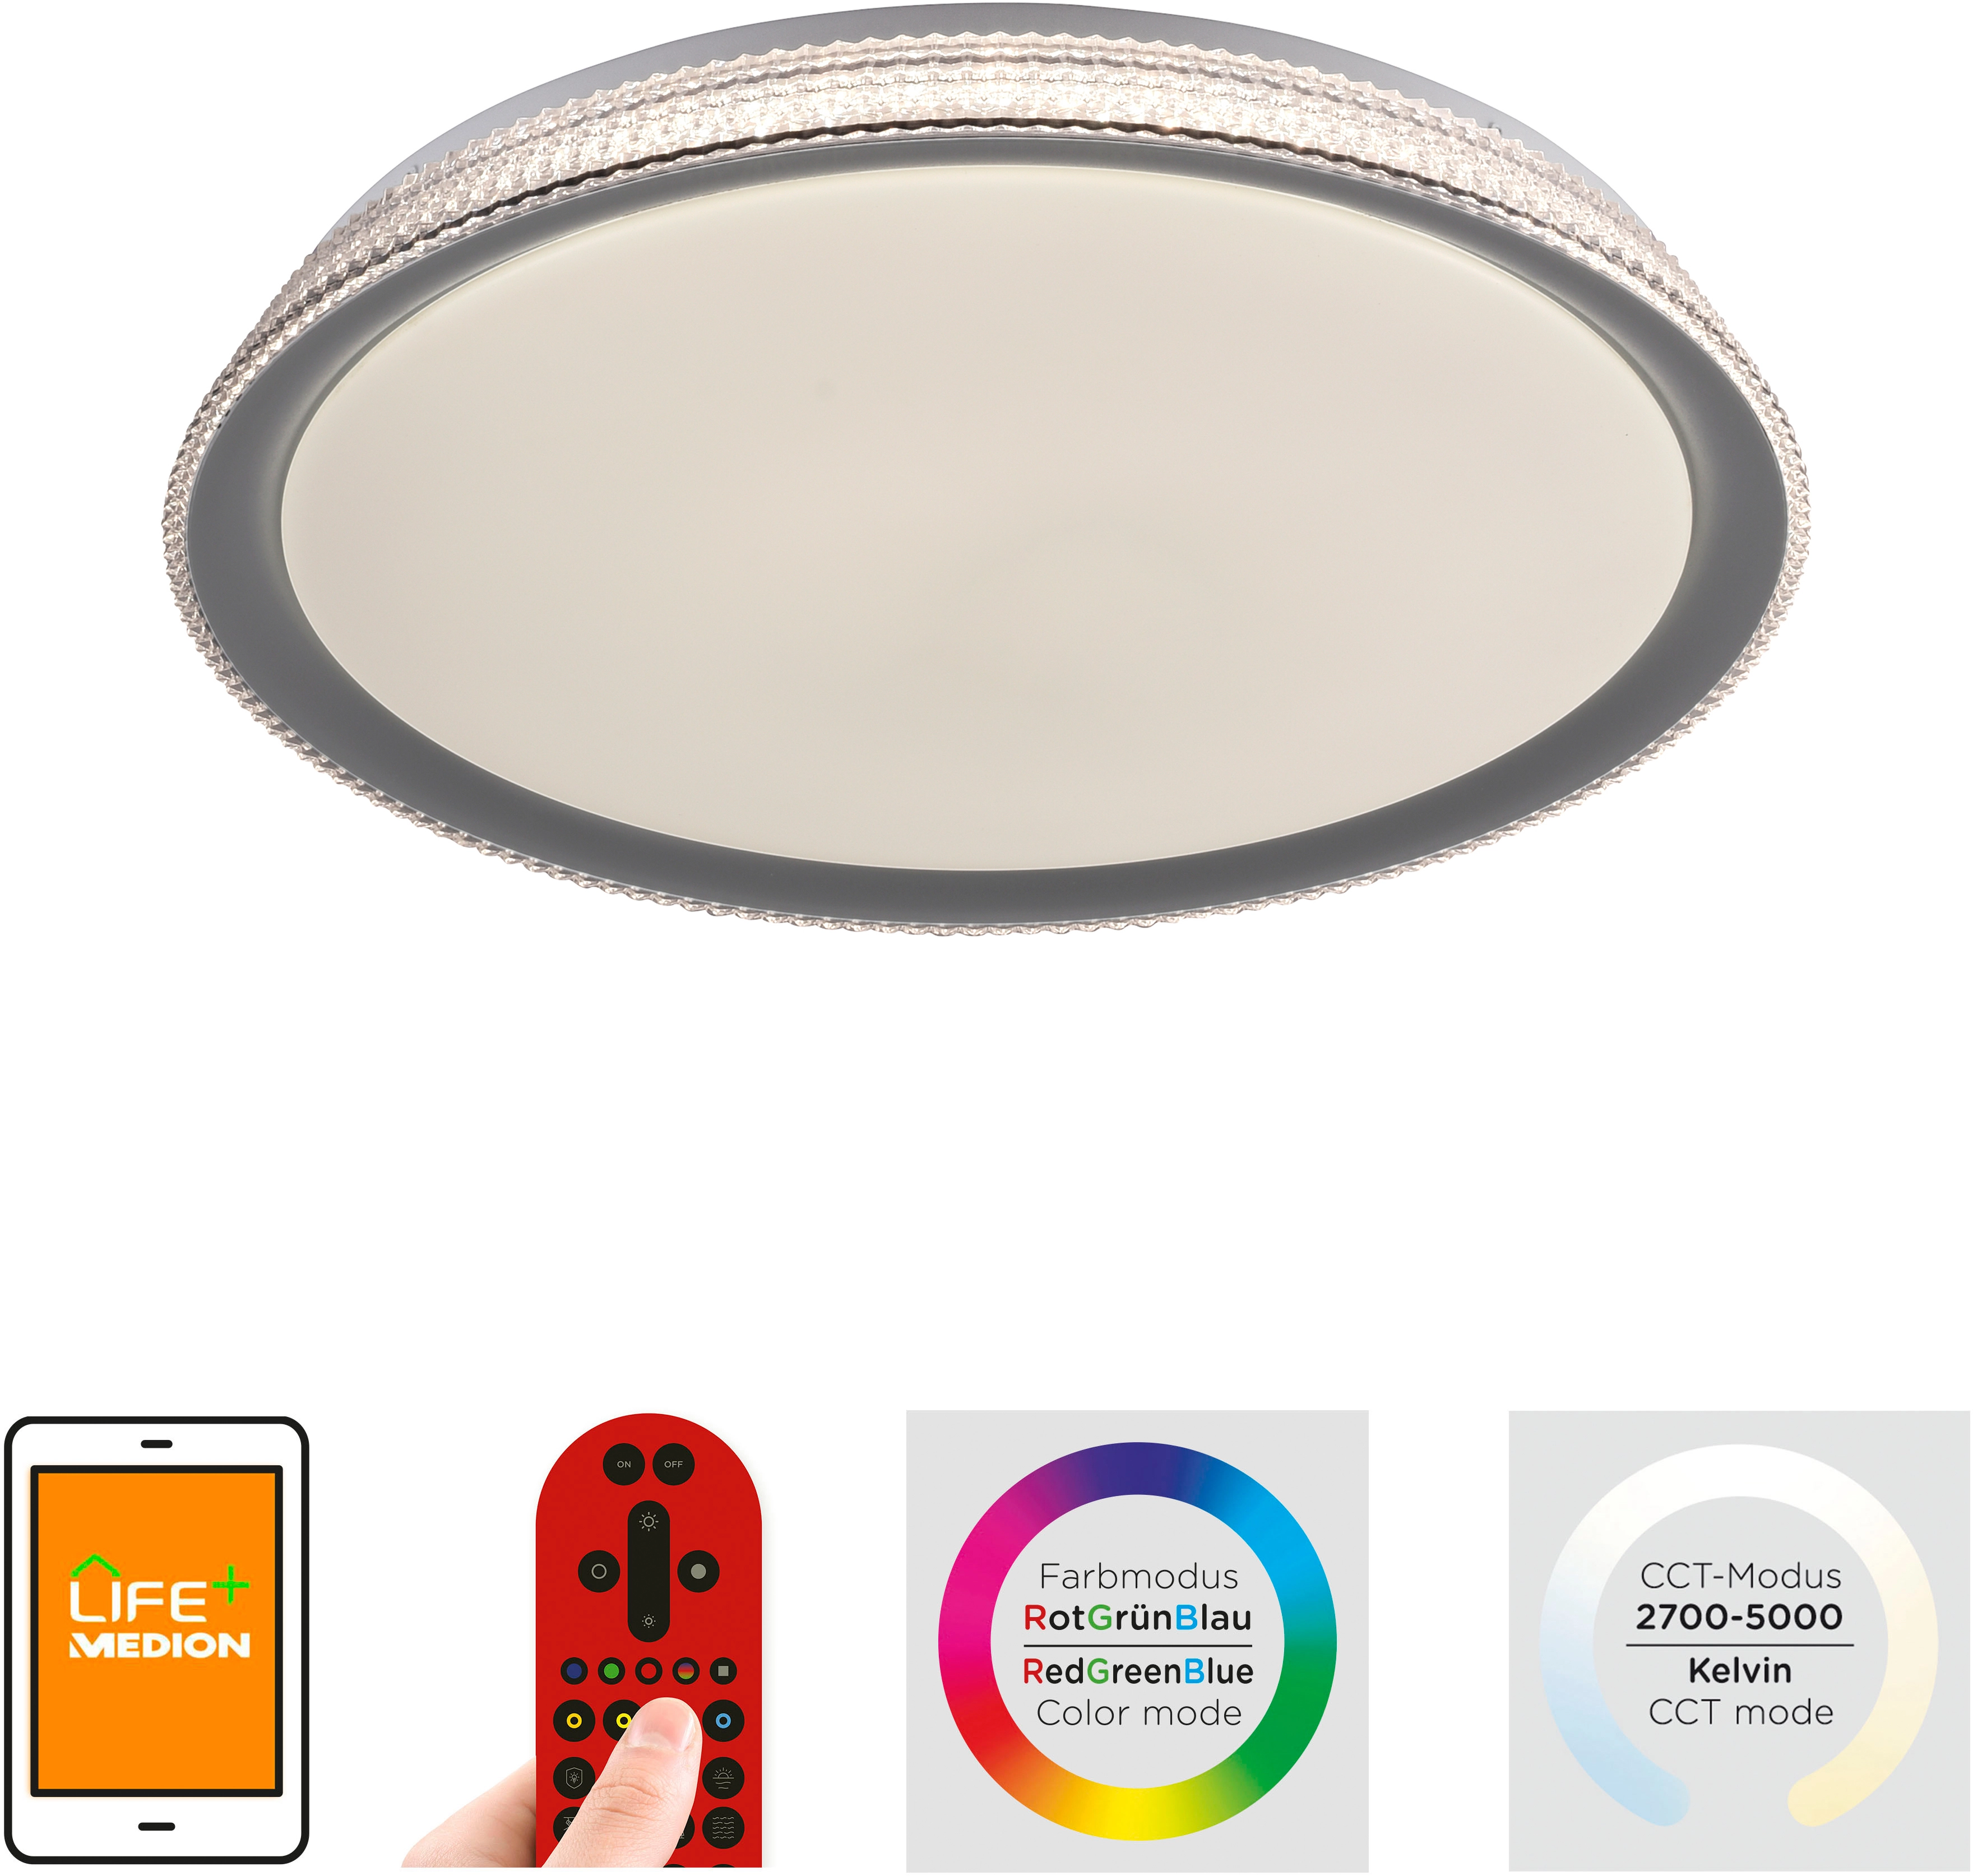 Silber OBI Lolasmart-Kari LED-Deckenleuchte Light. kaufen bei Just